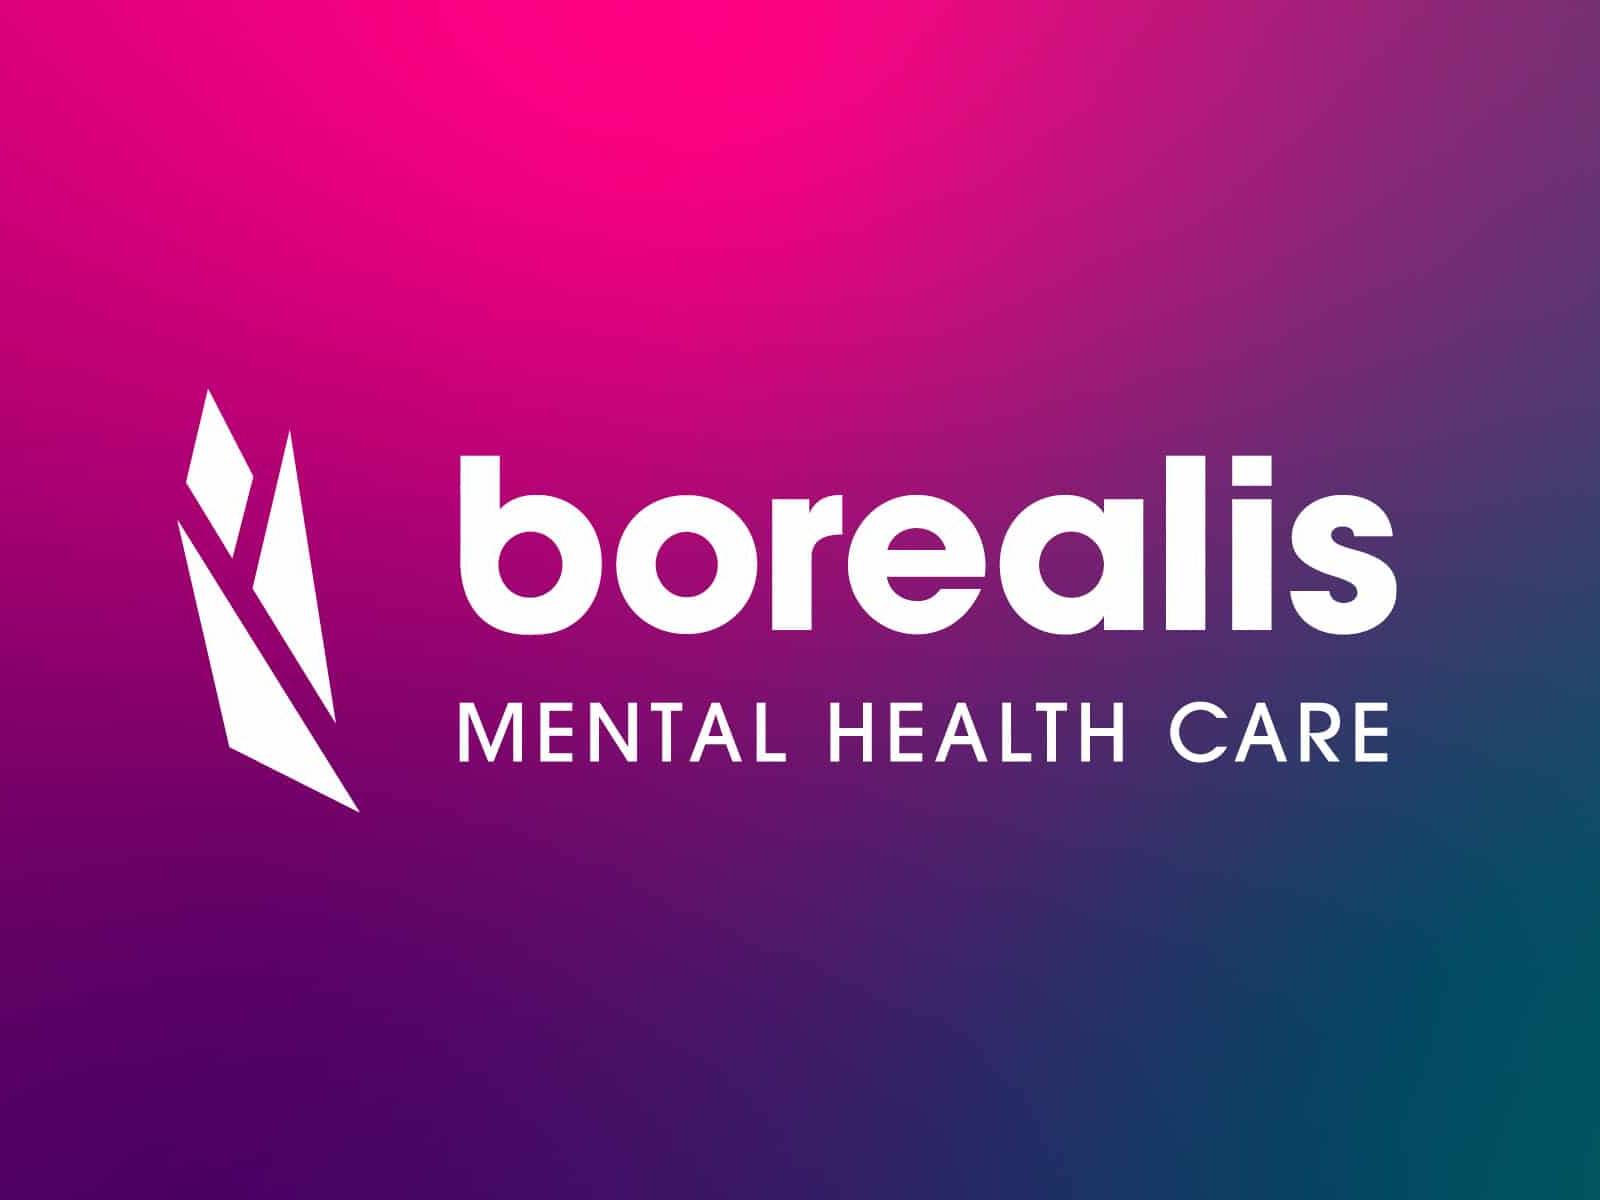 Borealis-ontario-mental-health-care-logo-brand-design